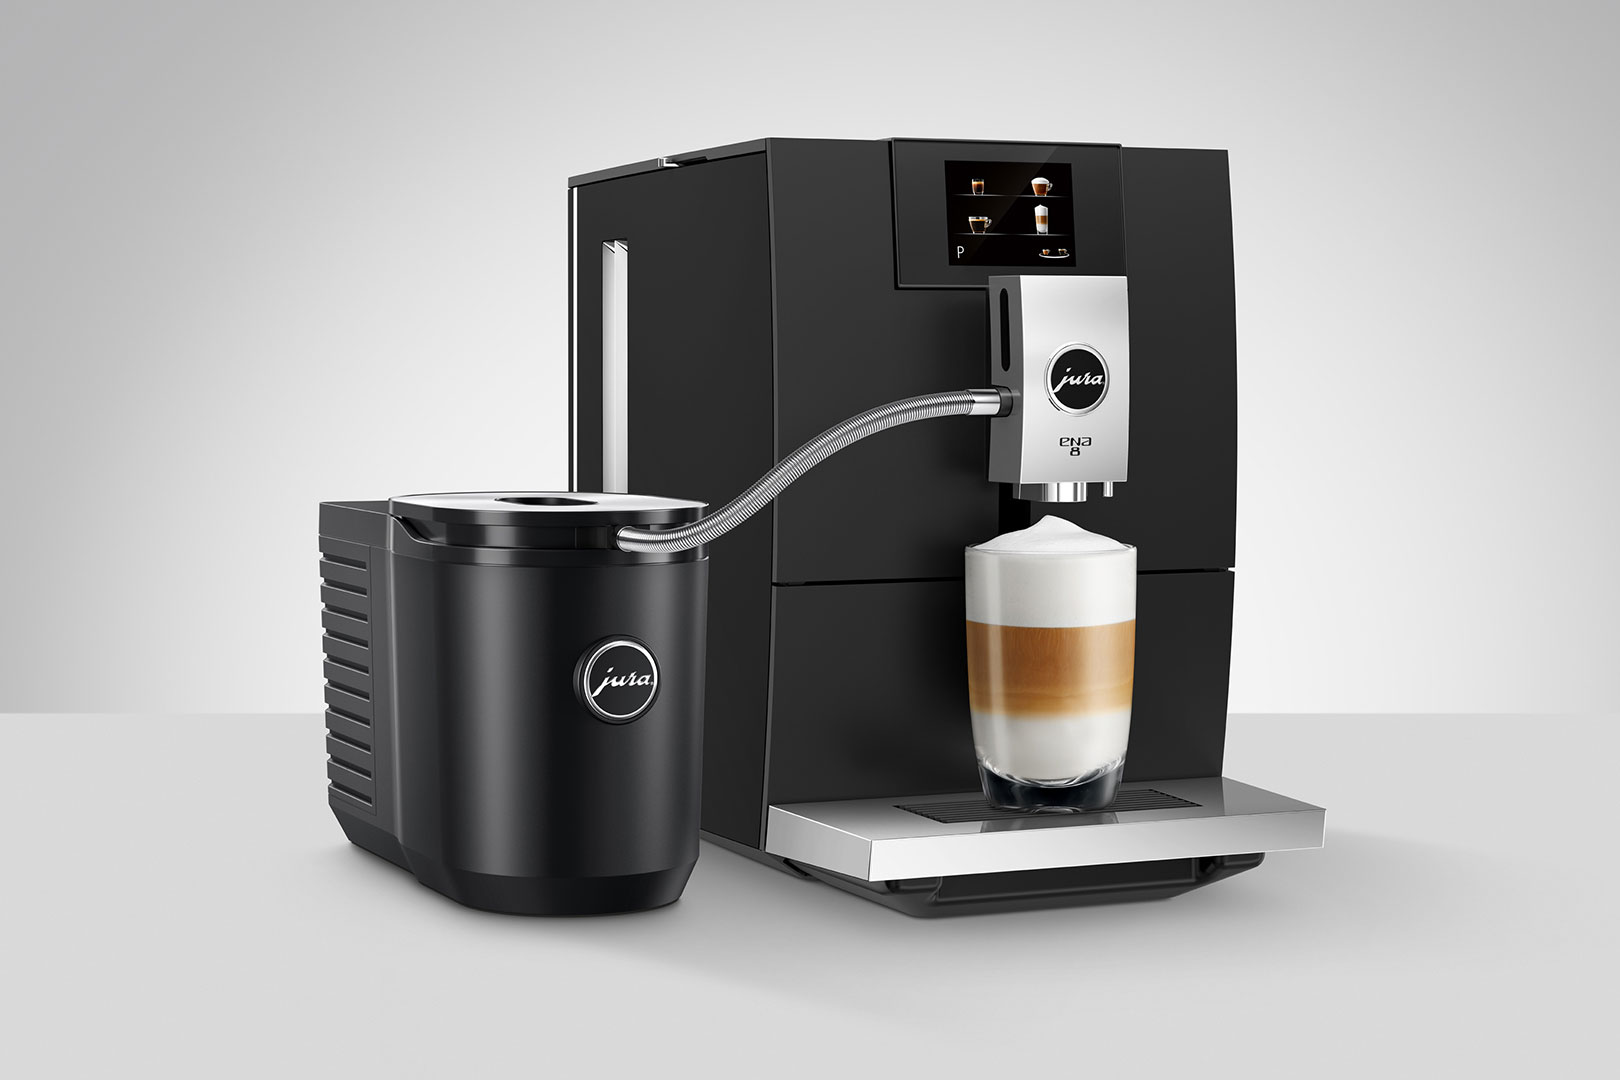 Milchkühler - Jura Kaffeevollautomaten vom autorisierten Händler